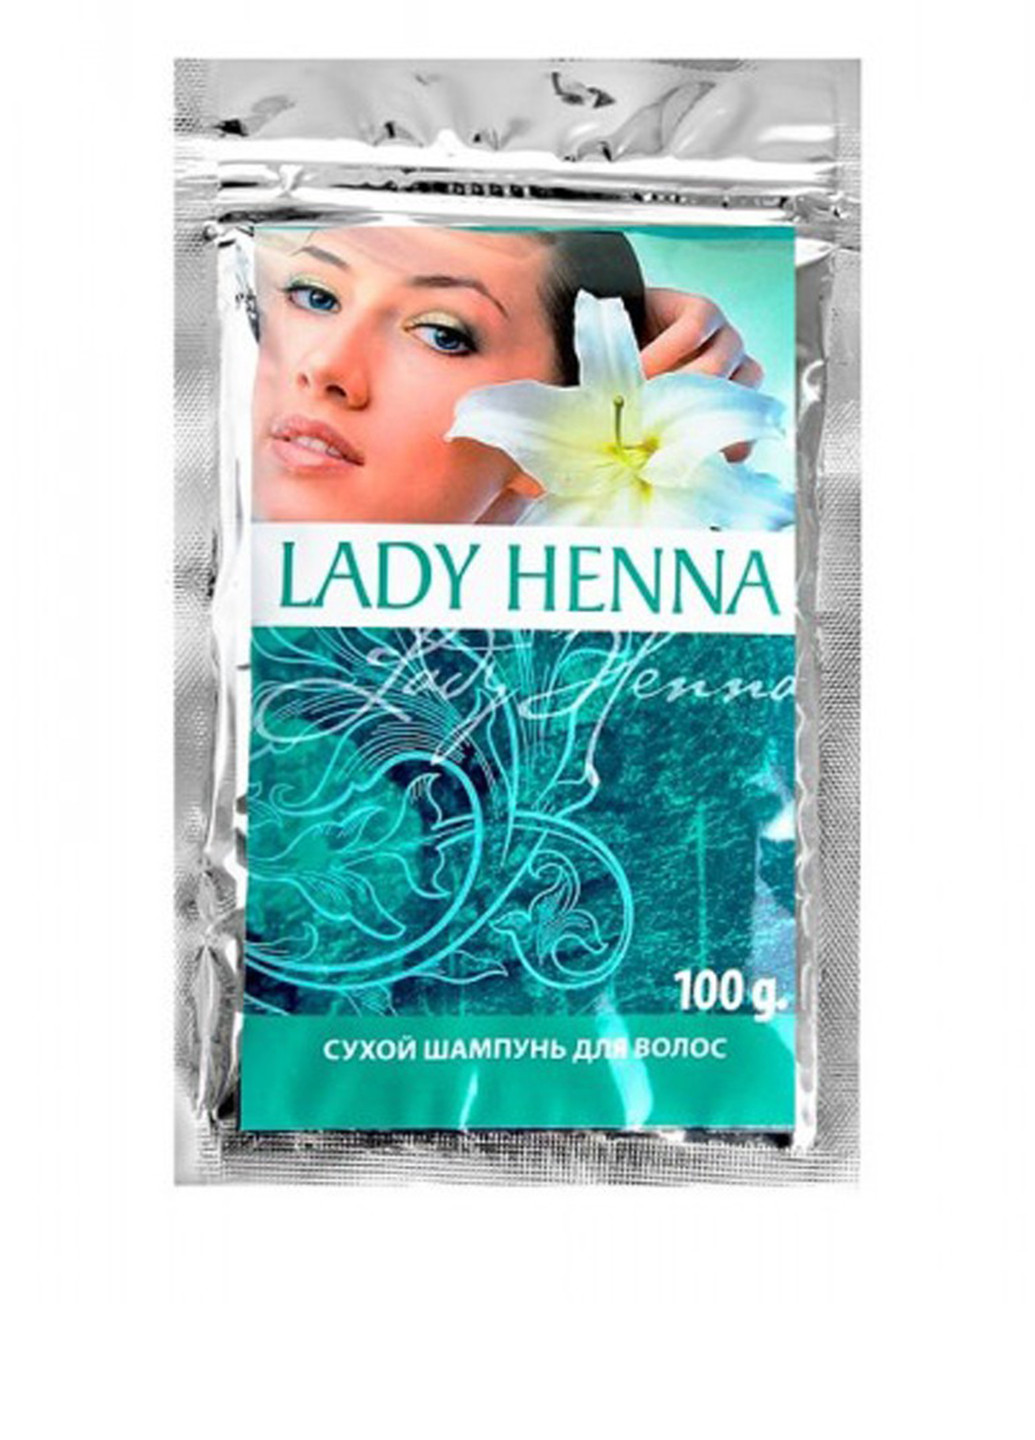 Шампунь сухой для волос, 100 г Lady Henna (77790516)